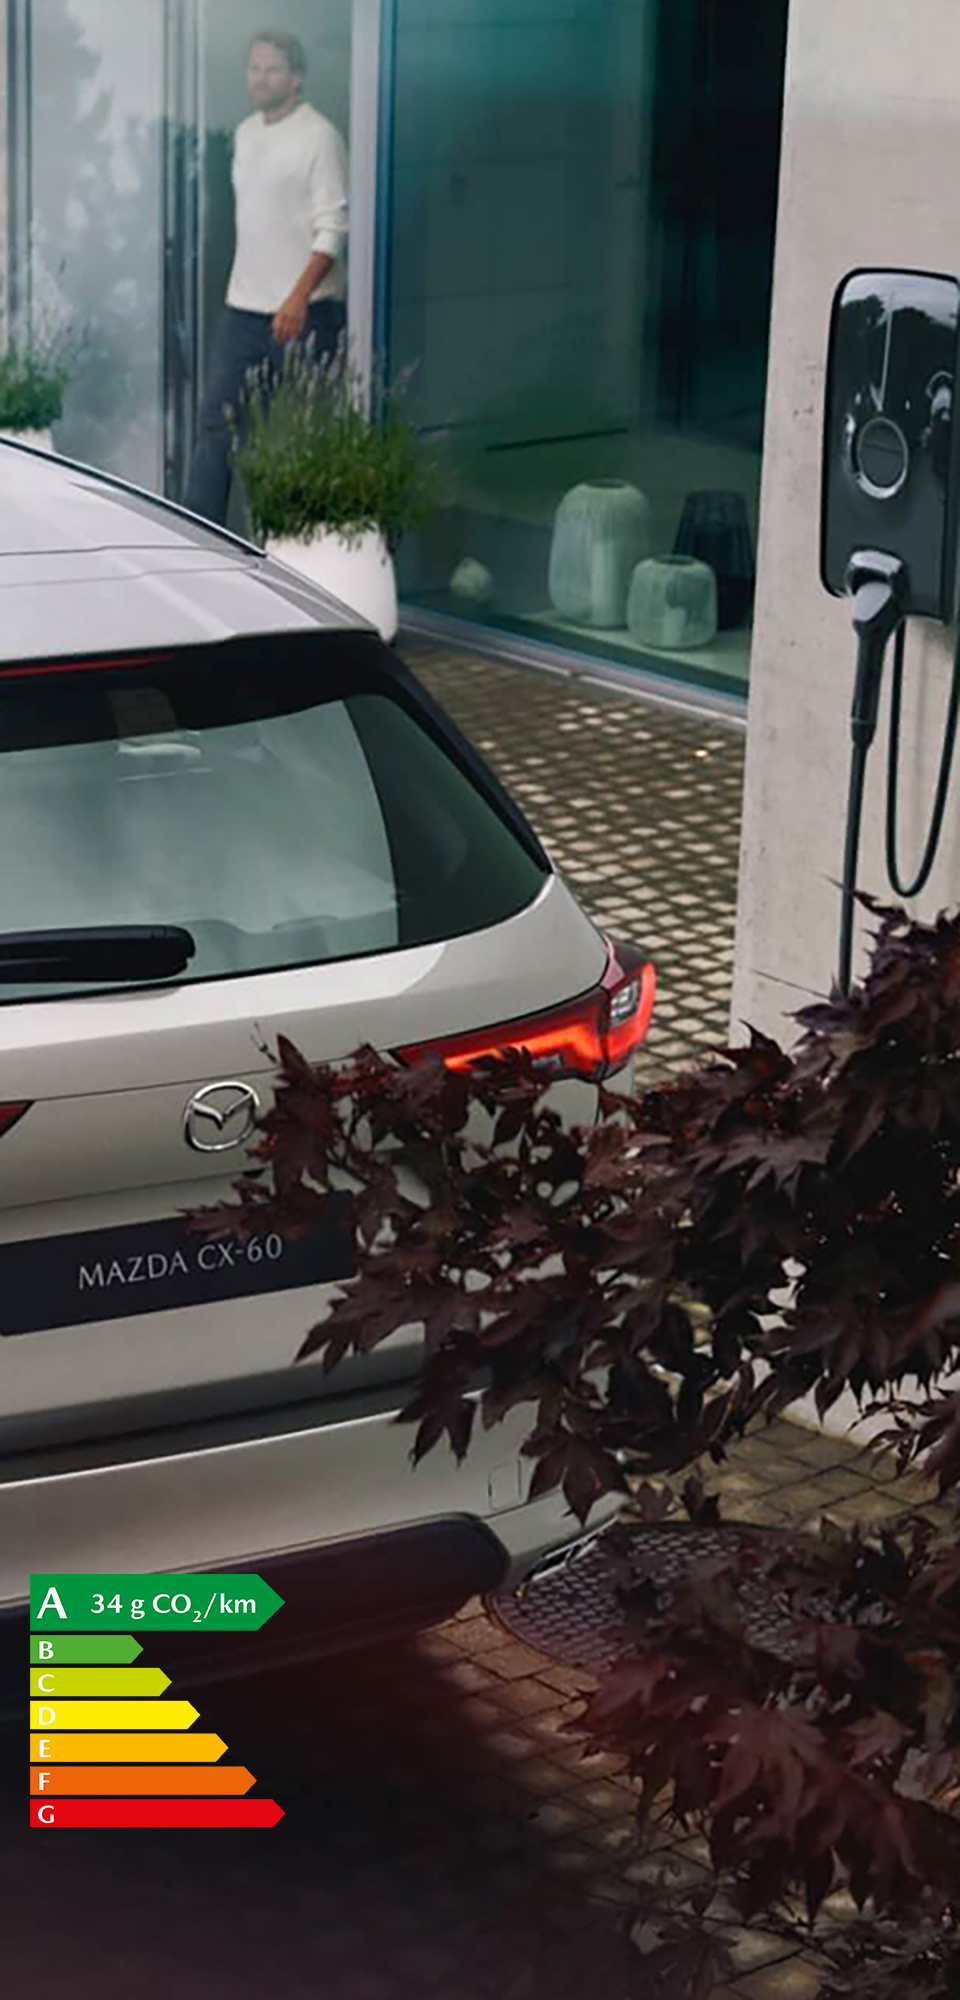 Le nouveau SUV hybride rechargeable Mazda CX-60 stationné à proximité d’une wallbox pour une recharge à domicile.